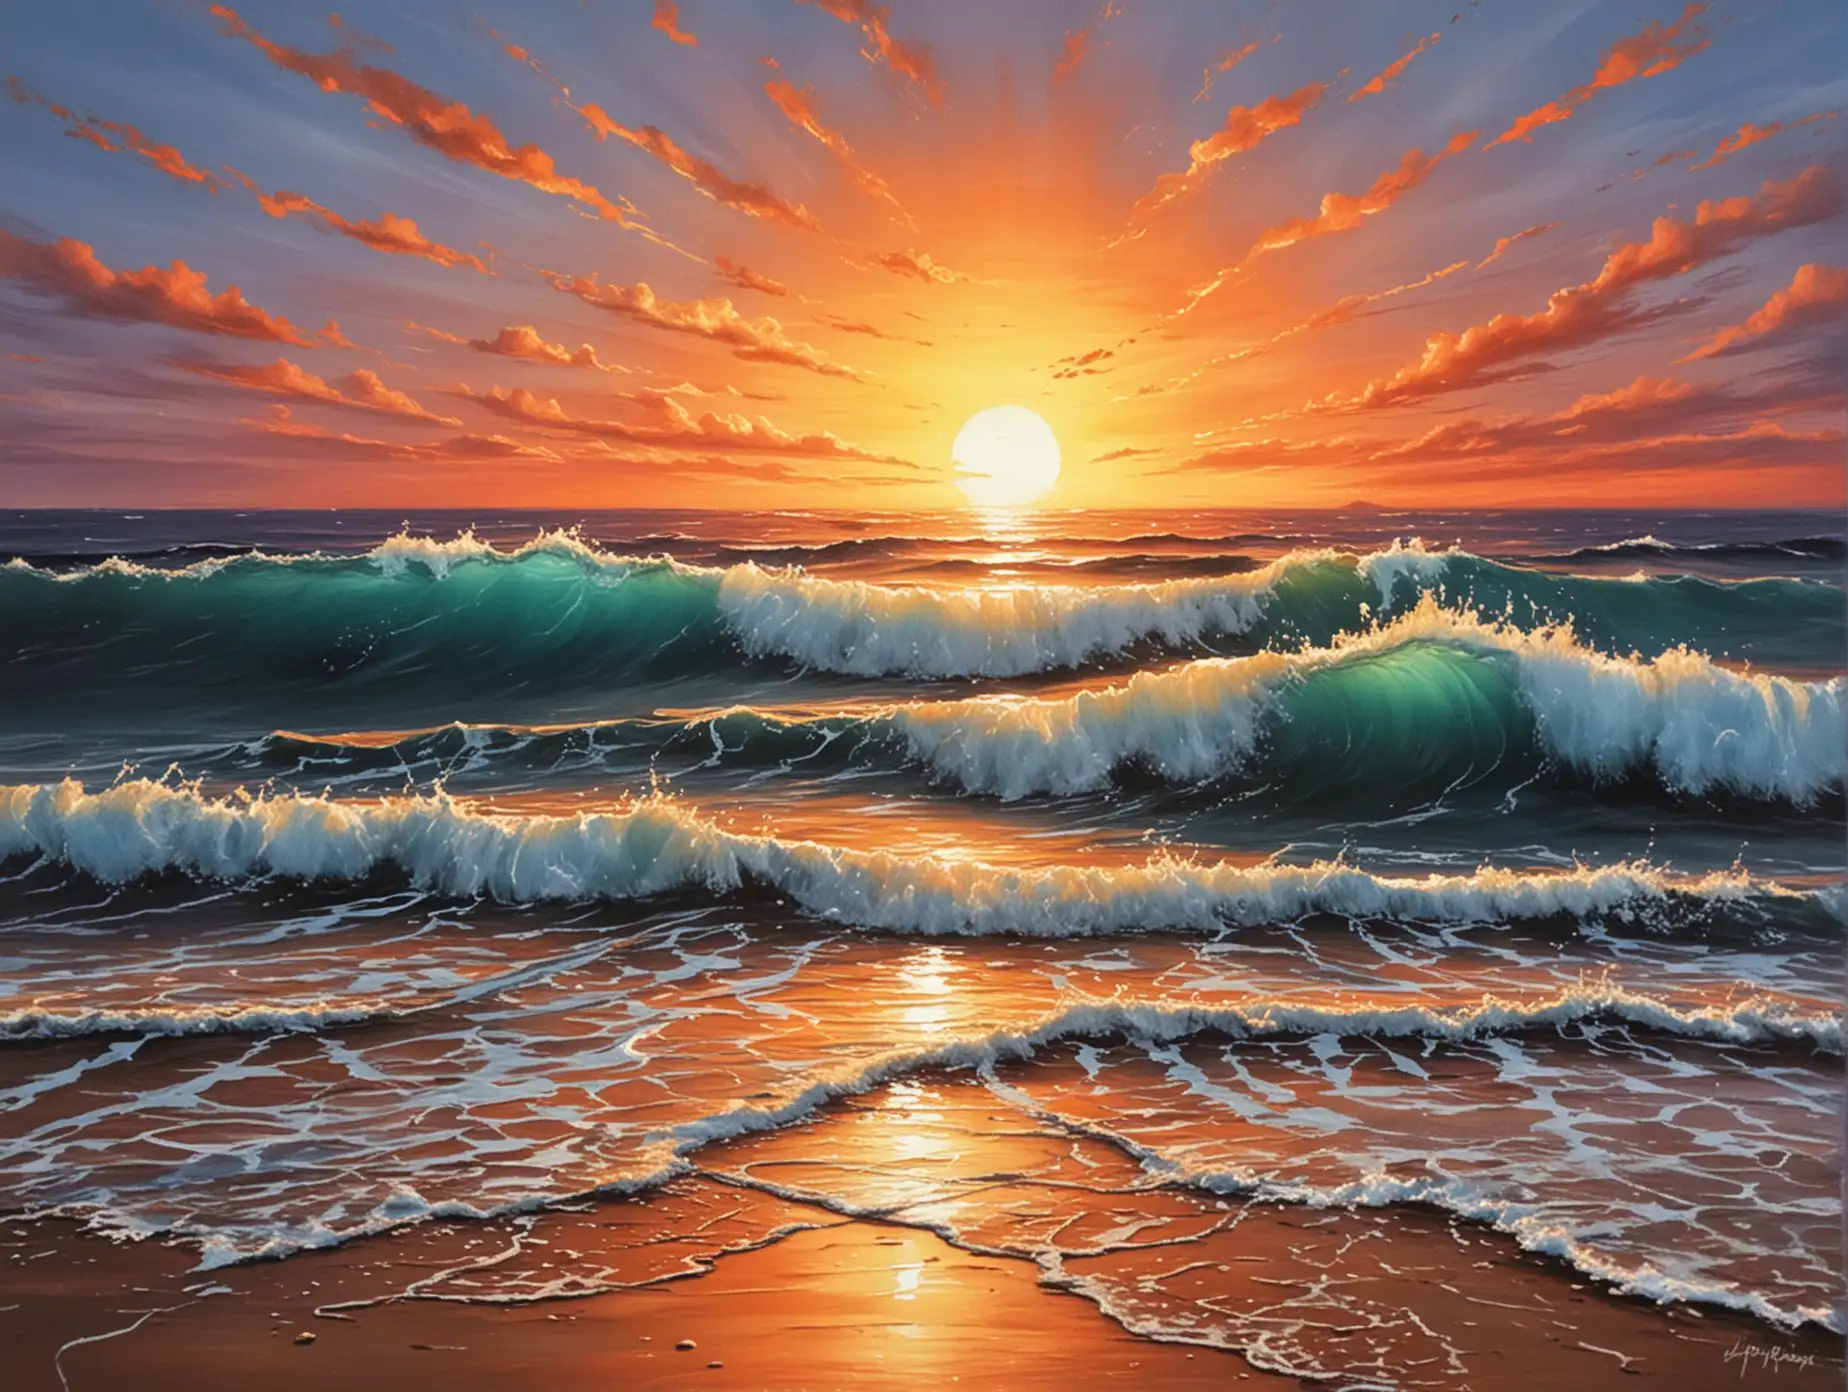 Paint an ocean sunset